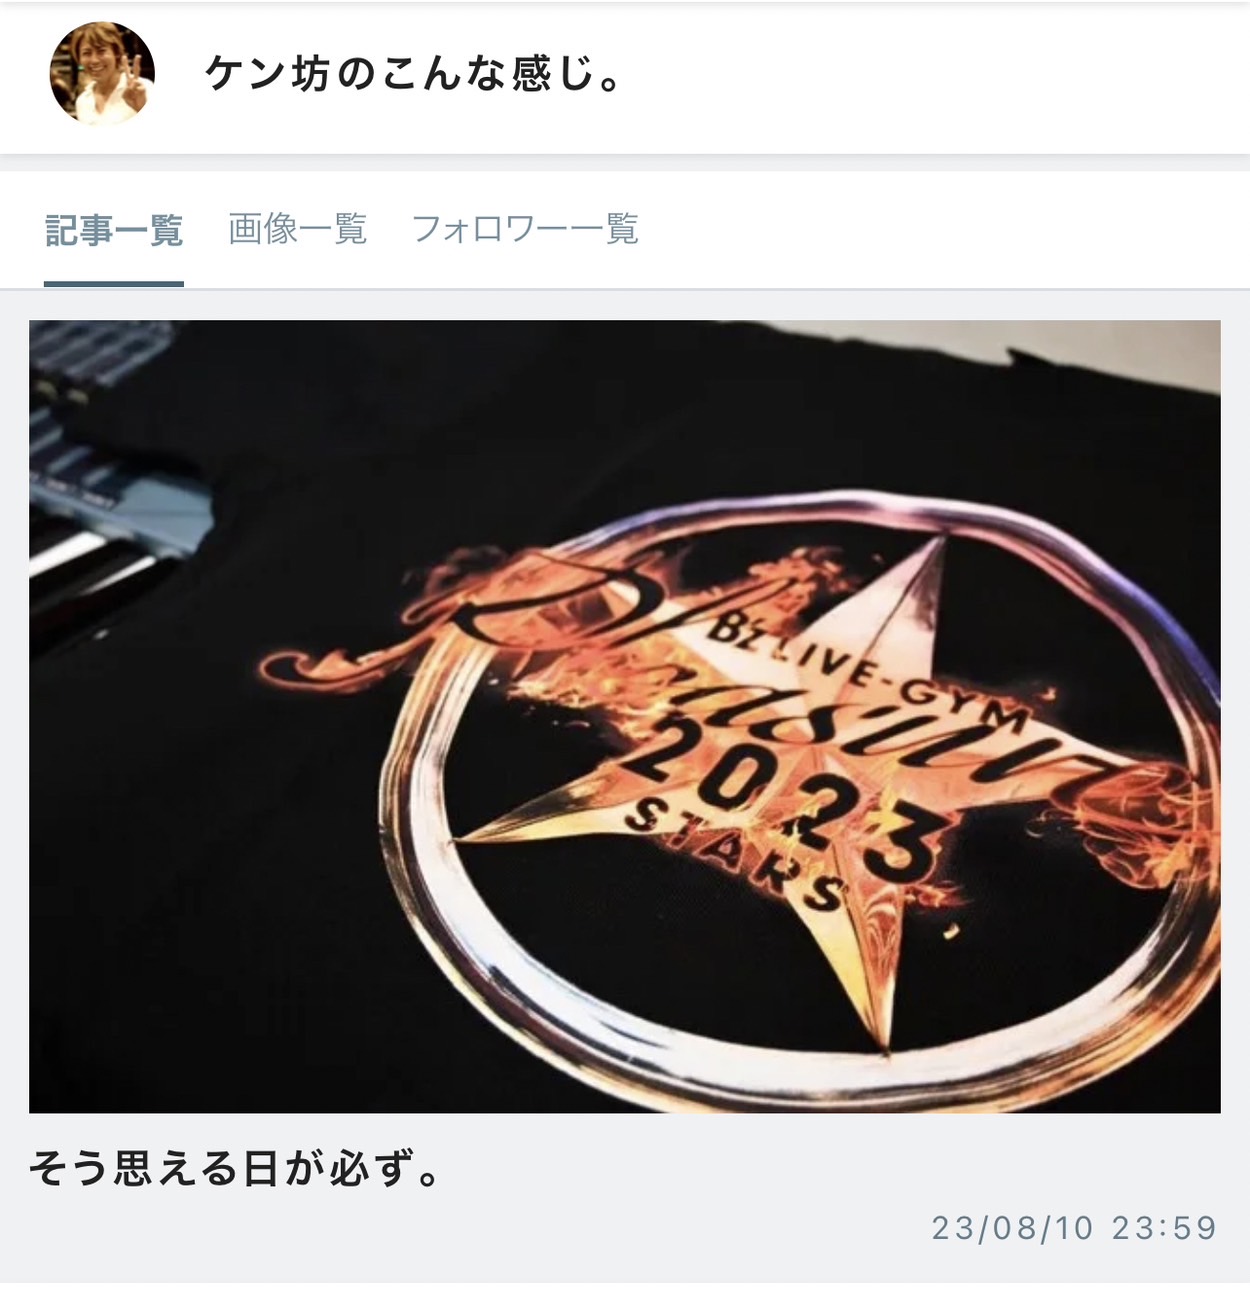 川村ケンがB'z『STARS』福井・沖縄公演中止について言及したブログ記事のサムネイル画像